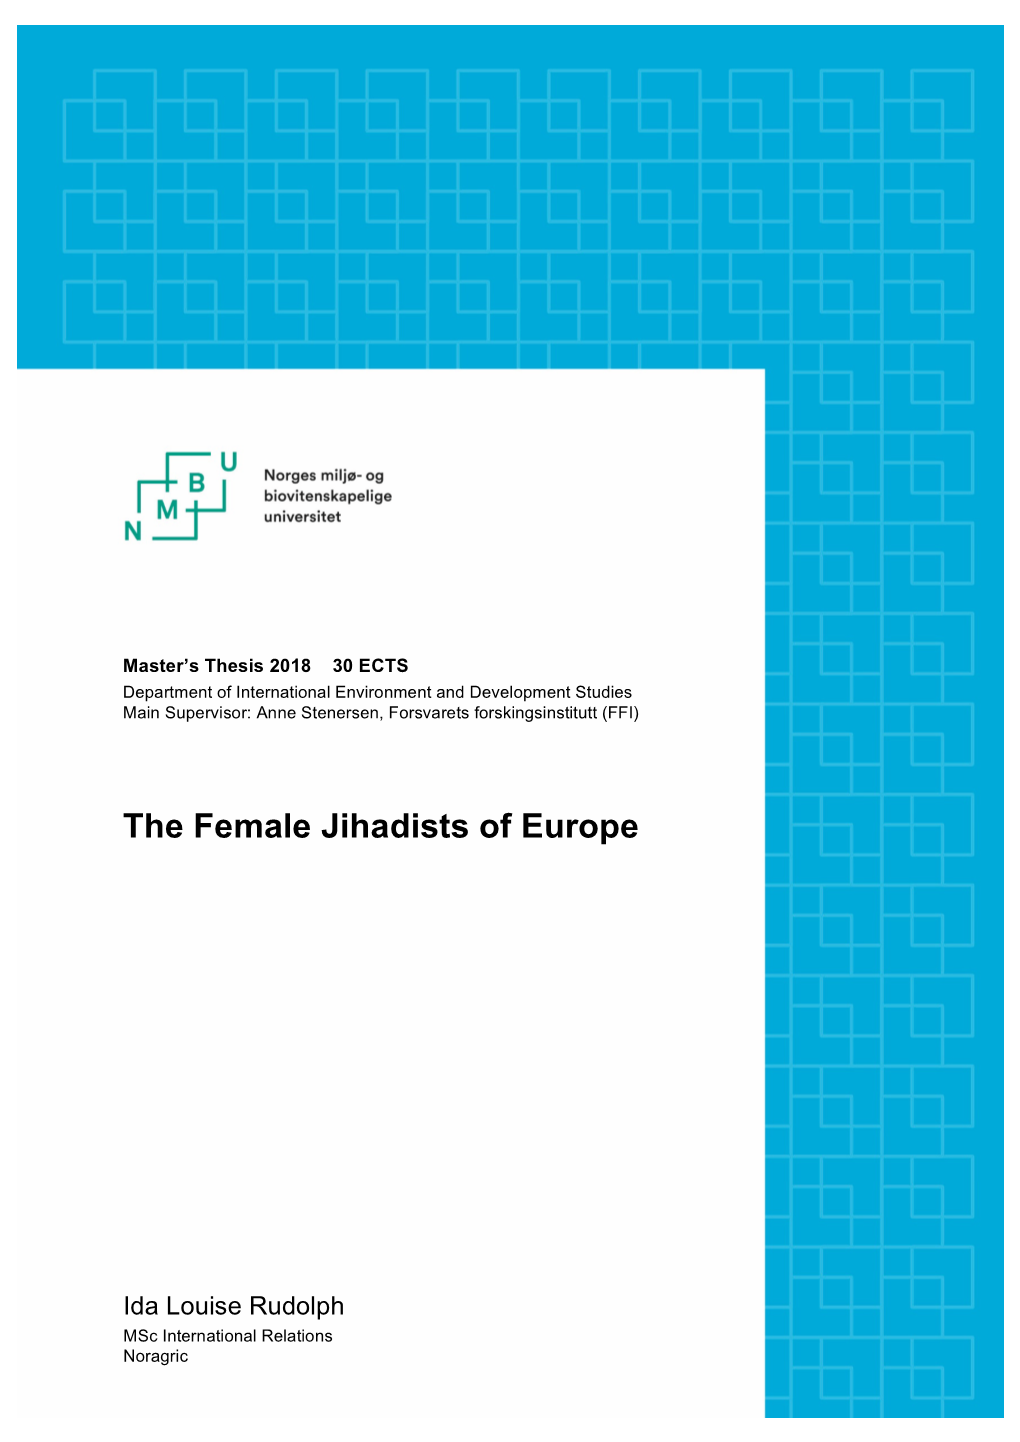 The Female Jihadists of Europe